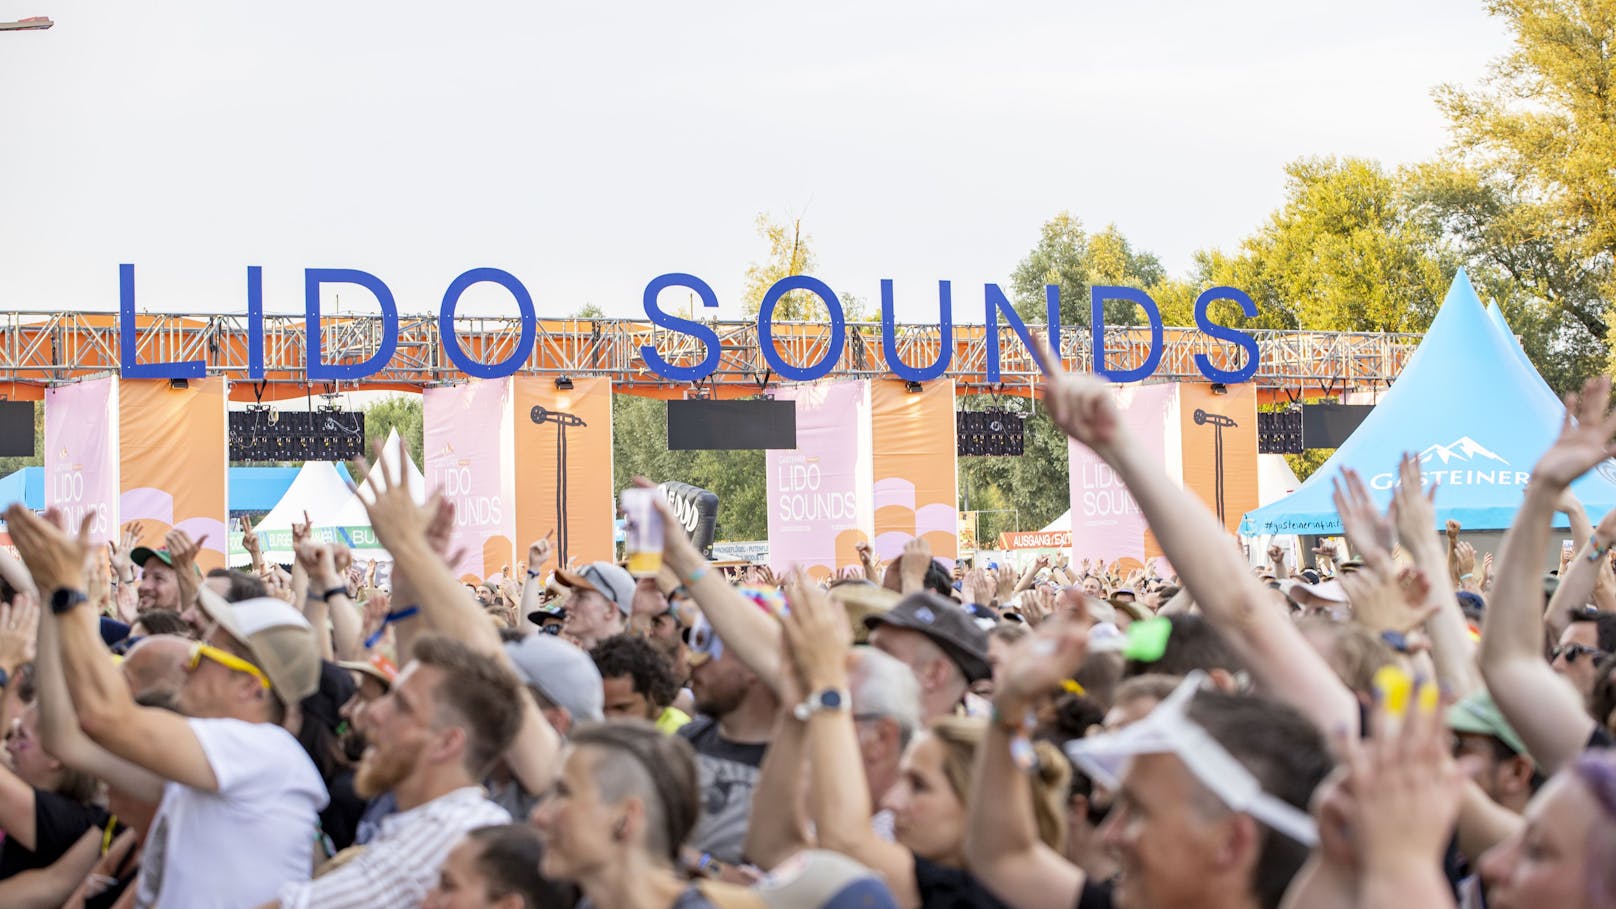 Das Lido Sounds-Festival begeisterte auch heuer wieder Zehntausende von Besuchern.